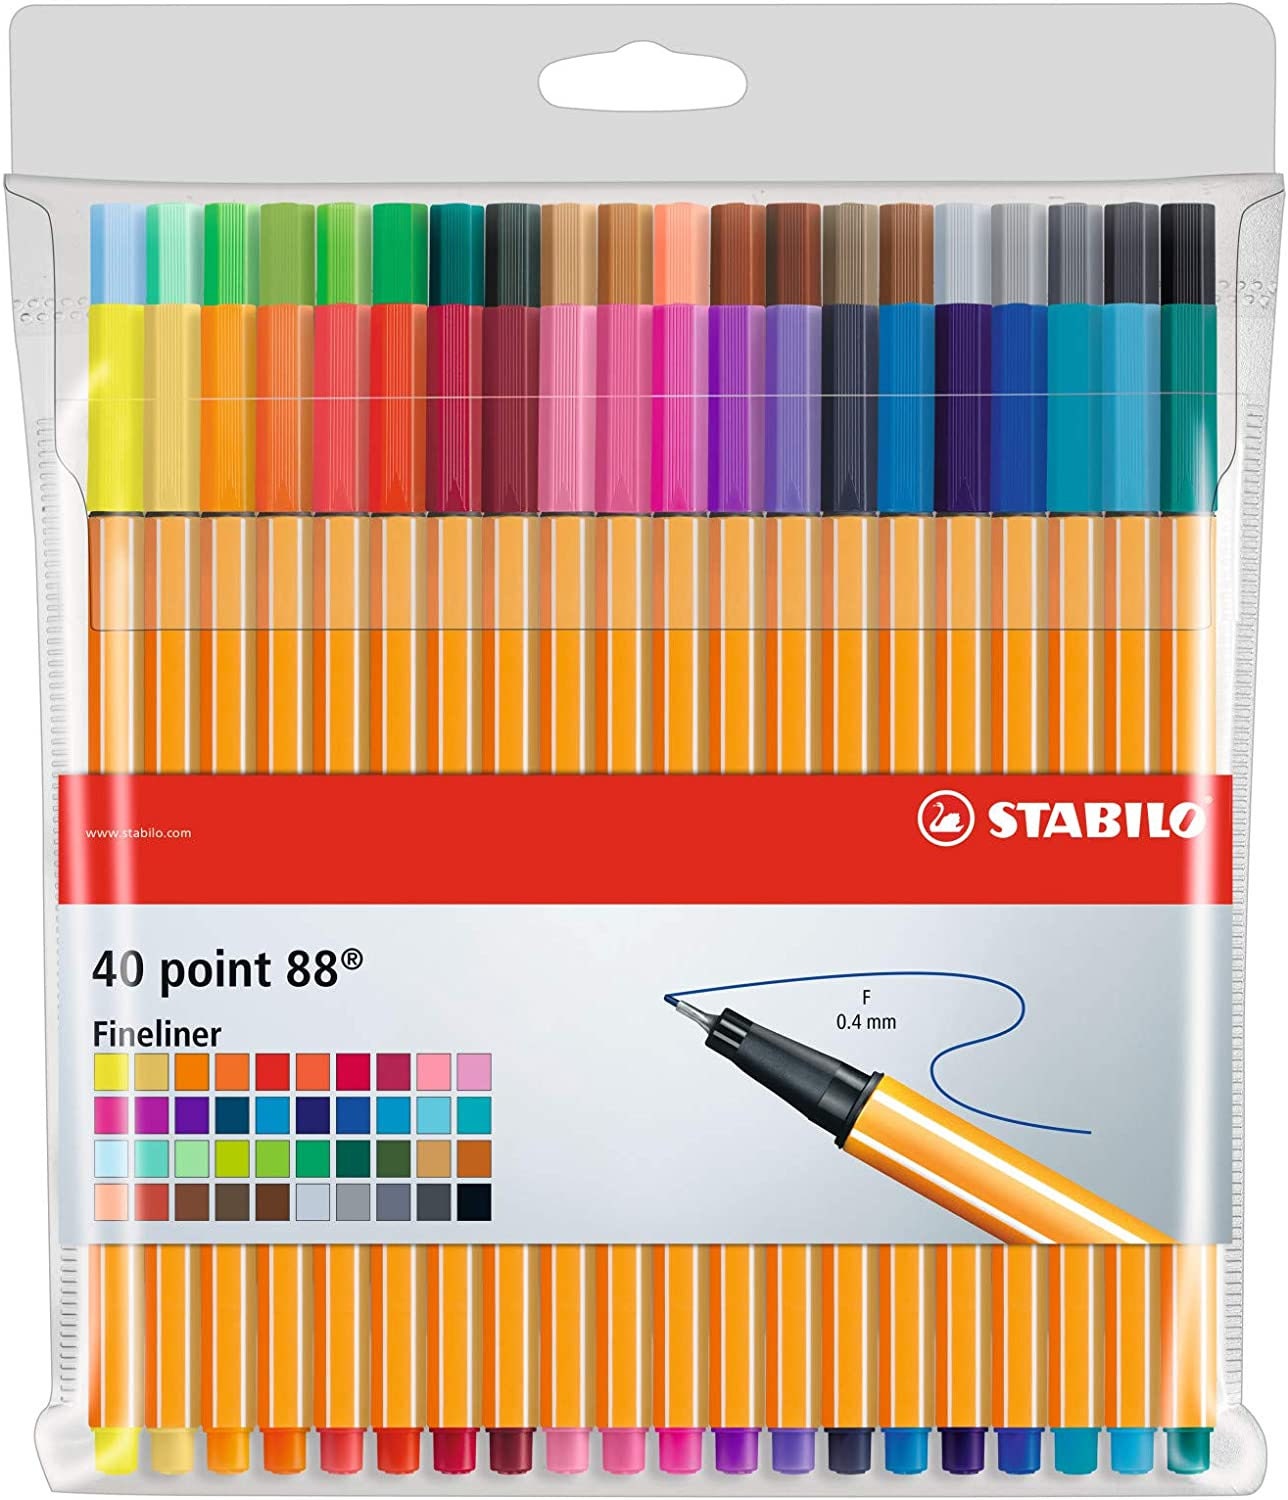 Stabilo Point 88 Fineliner Pens